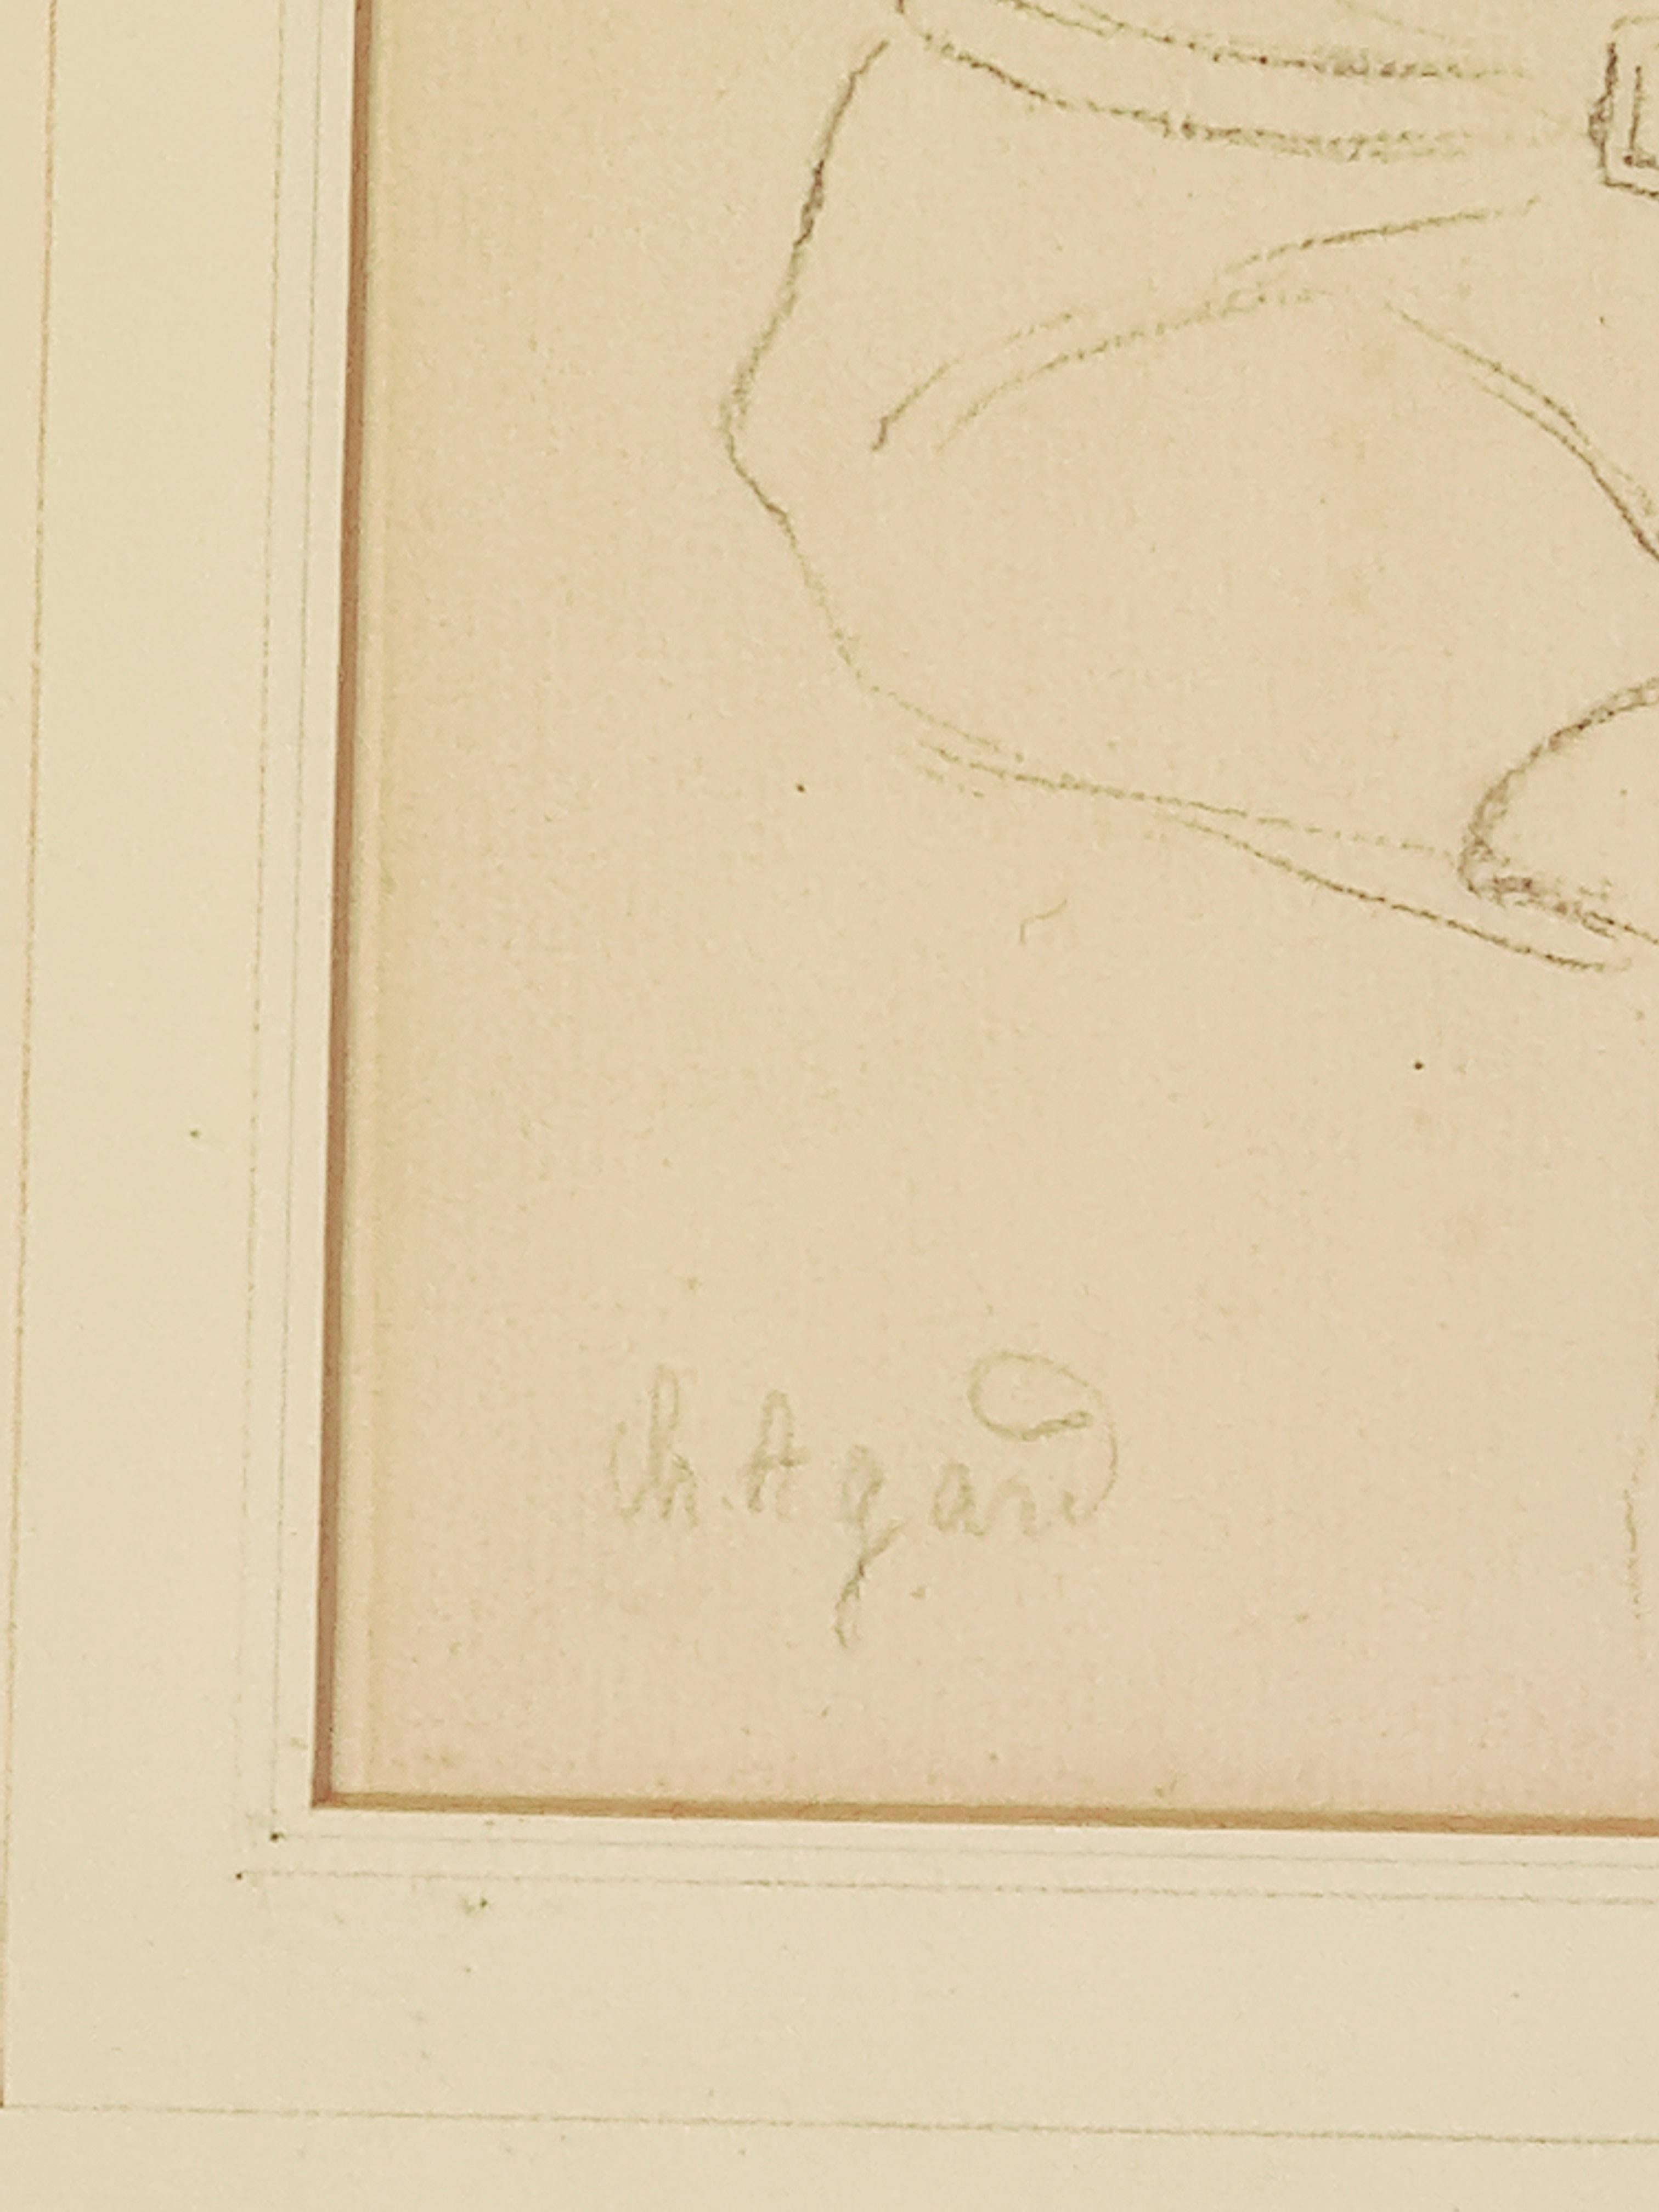 Bleistiftstudie eines malenden Kindes an einer Staffelei des französischen Künstlers Charles-Jean Agard. Das Werk ist unten links signiert und befindet sich in einem geschnitzten und vergoldeten Holzrahmen mit Passepartout unter Glas.

Eine sehr